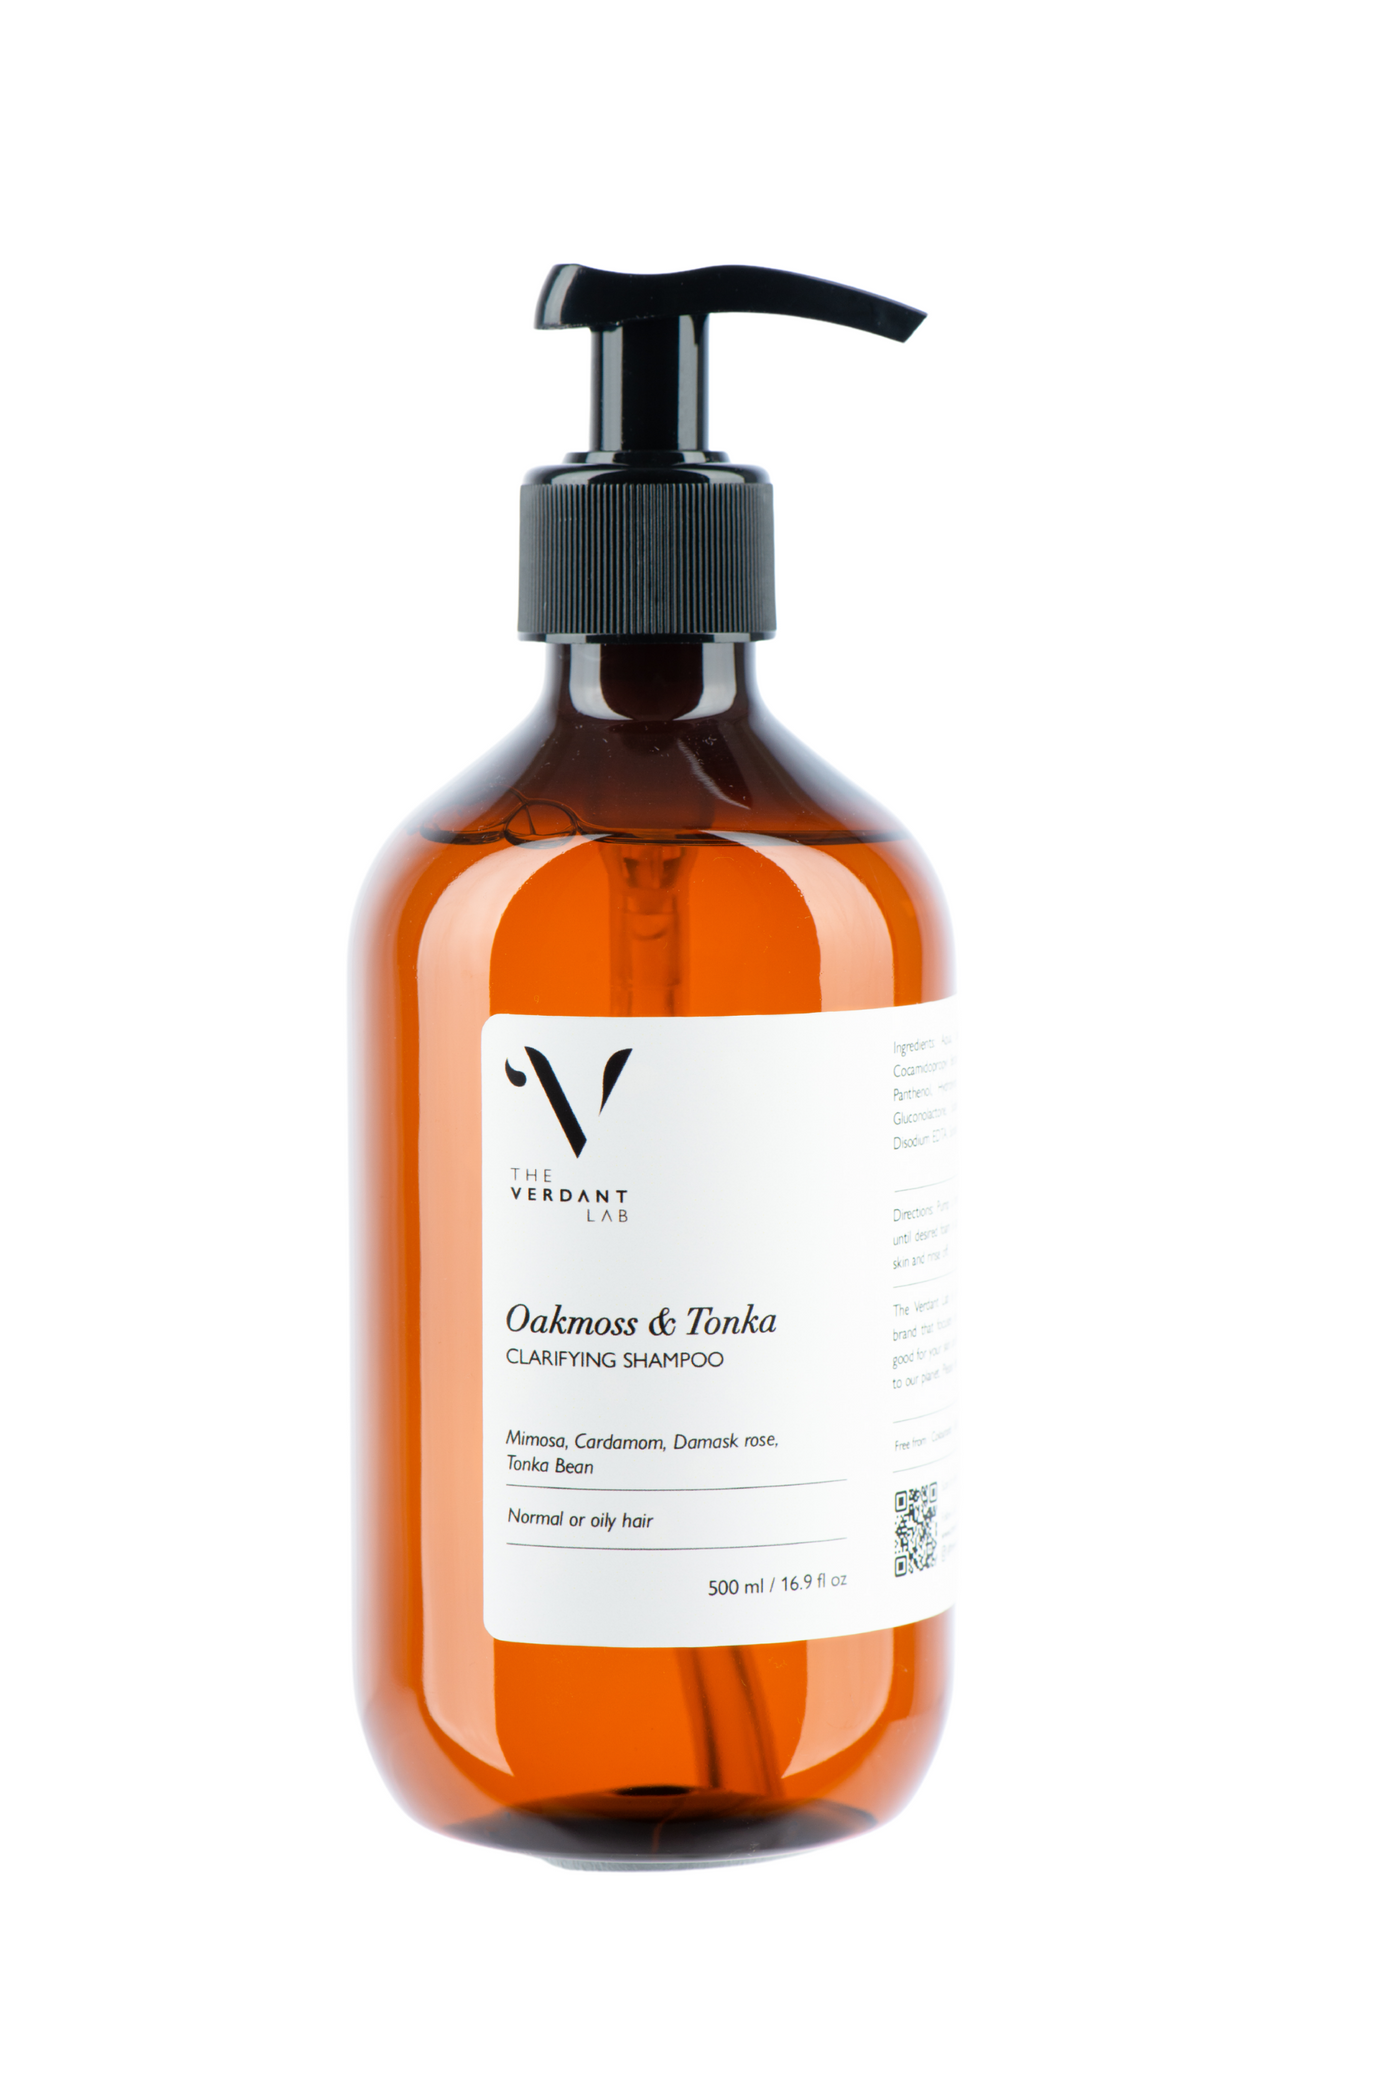 The Verdant Lab Clarifying Shampoo in Oakmoss & Tonka, available on ZERRIN